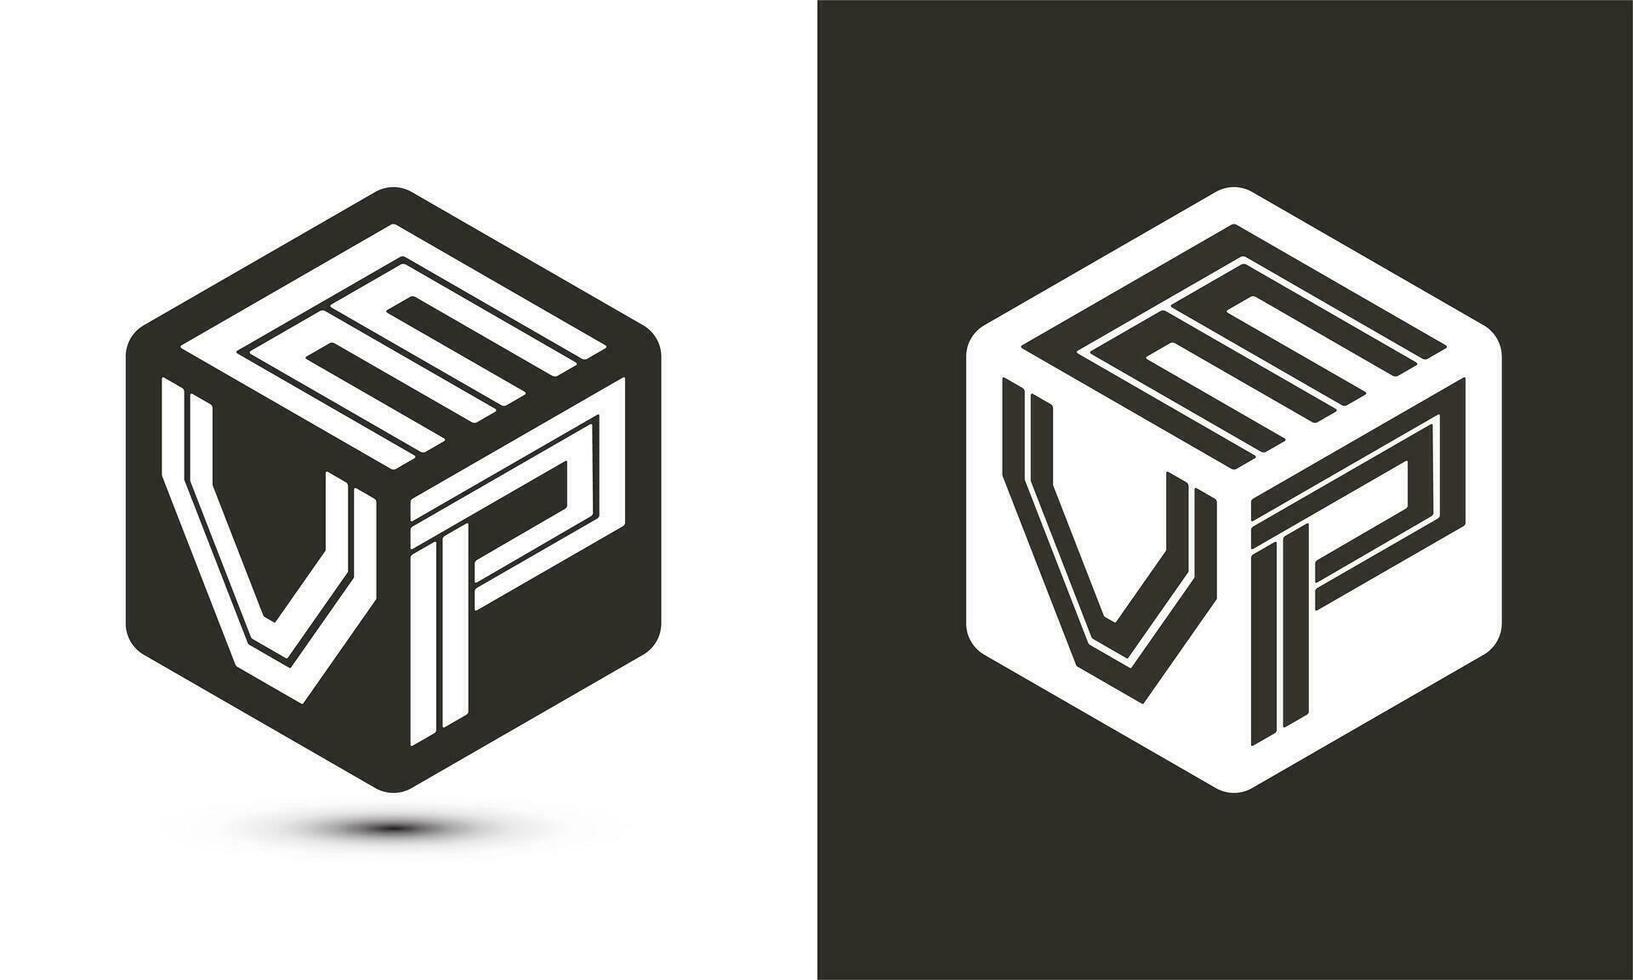 evp brief logo ontwerp met illustrator kubus logo, vector logo modern alfabet doopvont overlappen stijl.